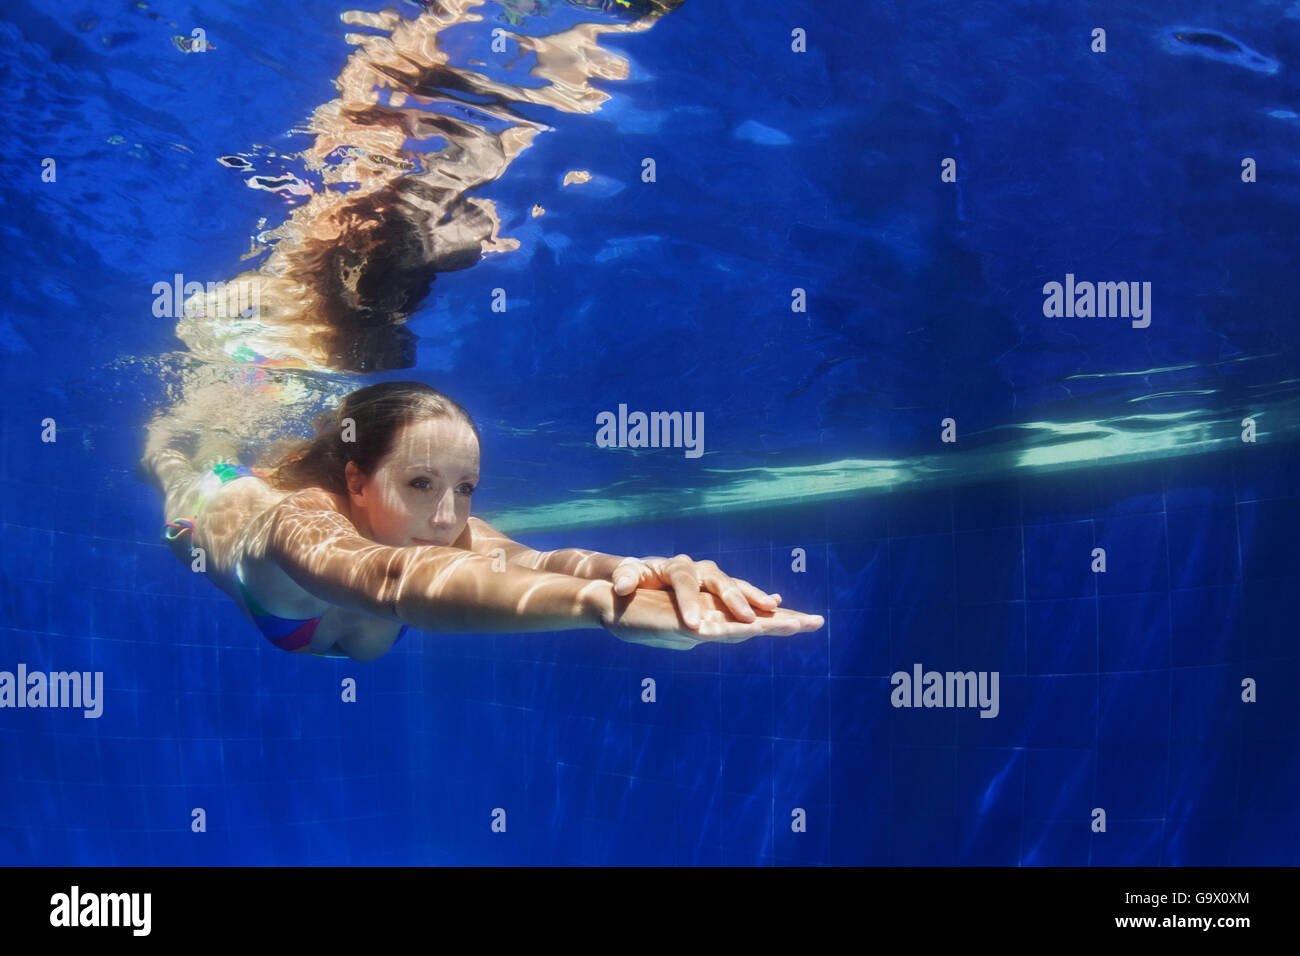 Belle jeune femme plonger sous l'eau avec plaisir au bord de la piscine bleu de de. Mode de vie sain et actif, les gens de l'activité sport d'eau Banque D'Images